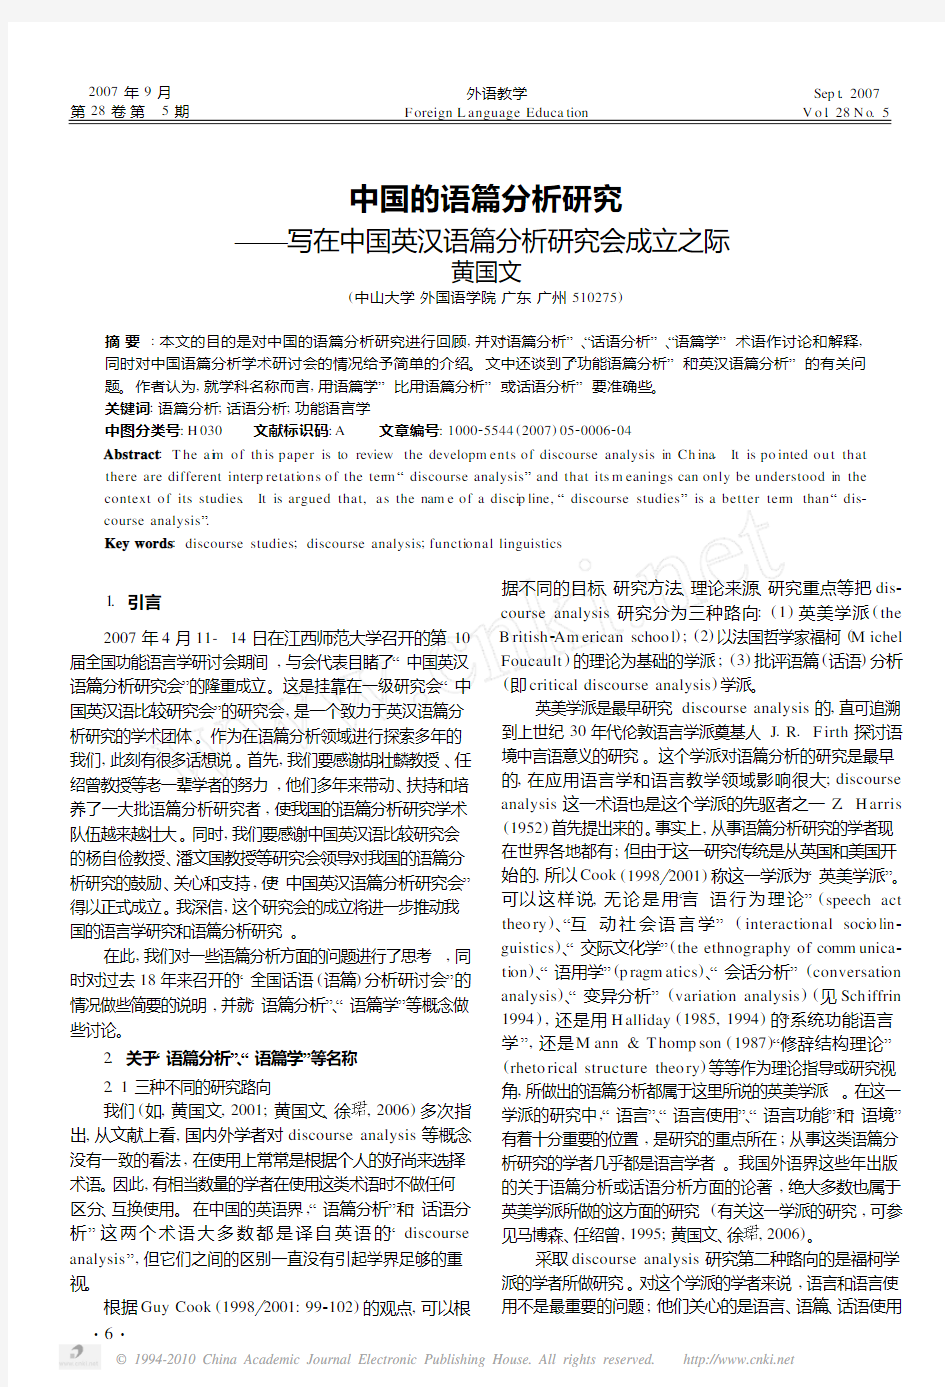 中国的语篇分析研究_写在中国英汉语篇分析研究会成立之际_黄国文